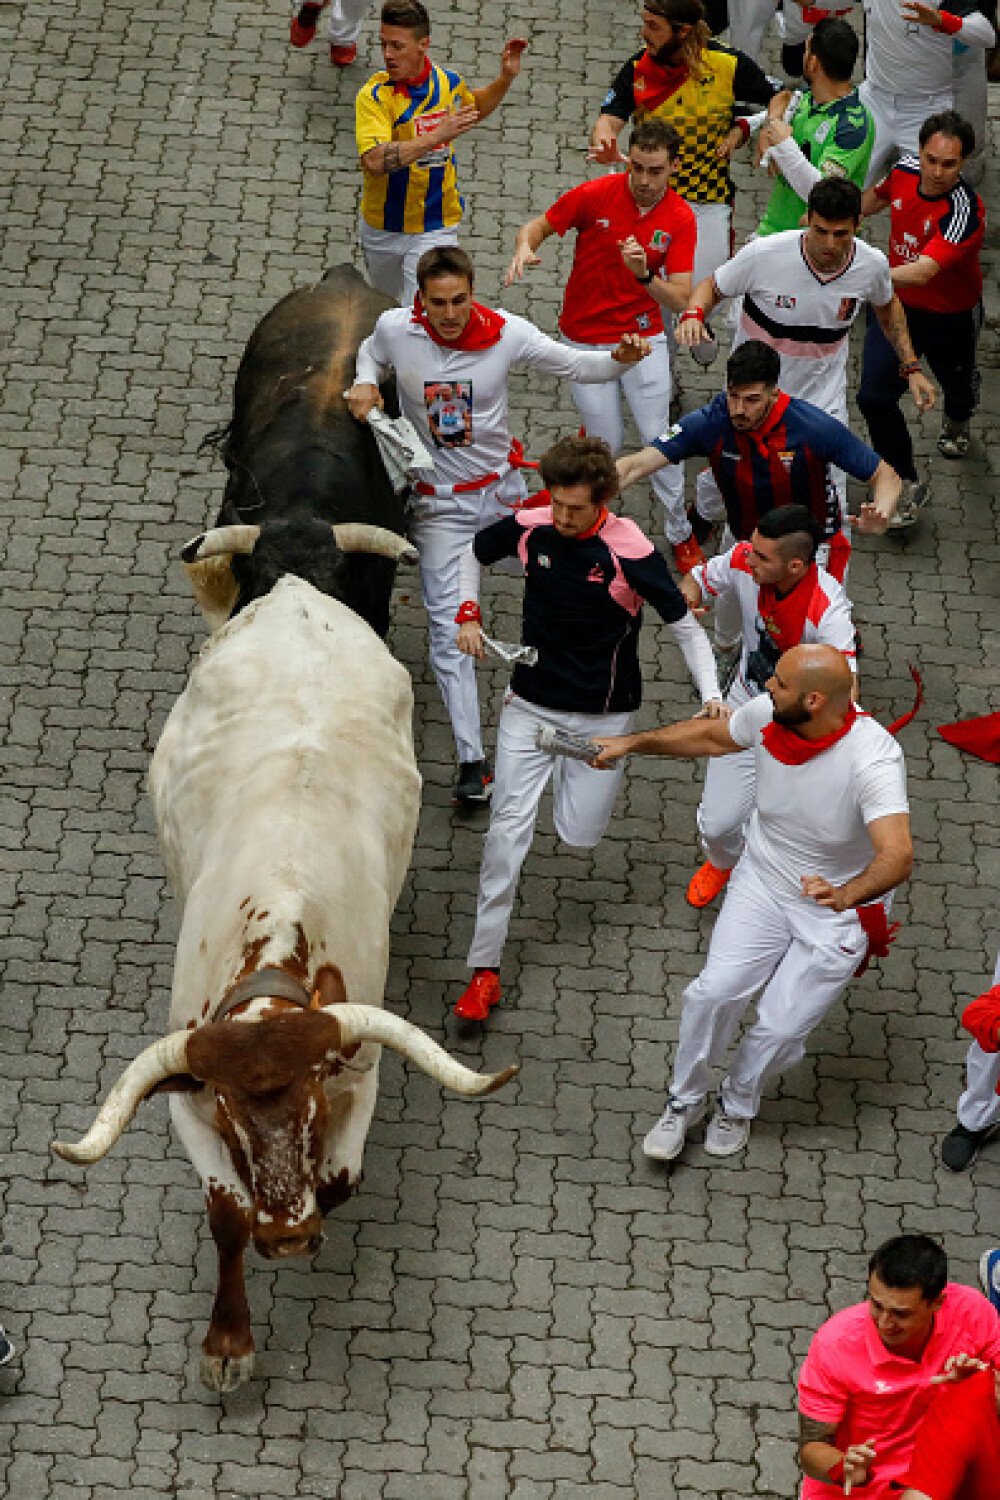 Imagini șocante. Turiști călcați în picioare și împunși de tauri la Pamplona - Imaginea 24